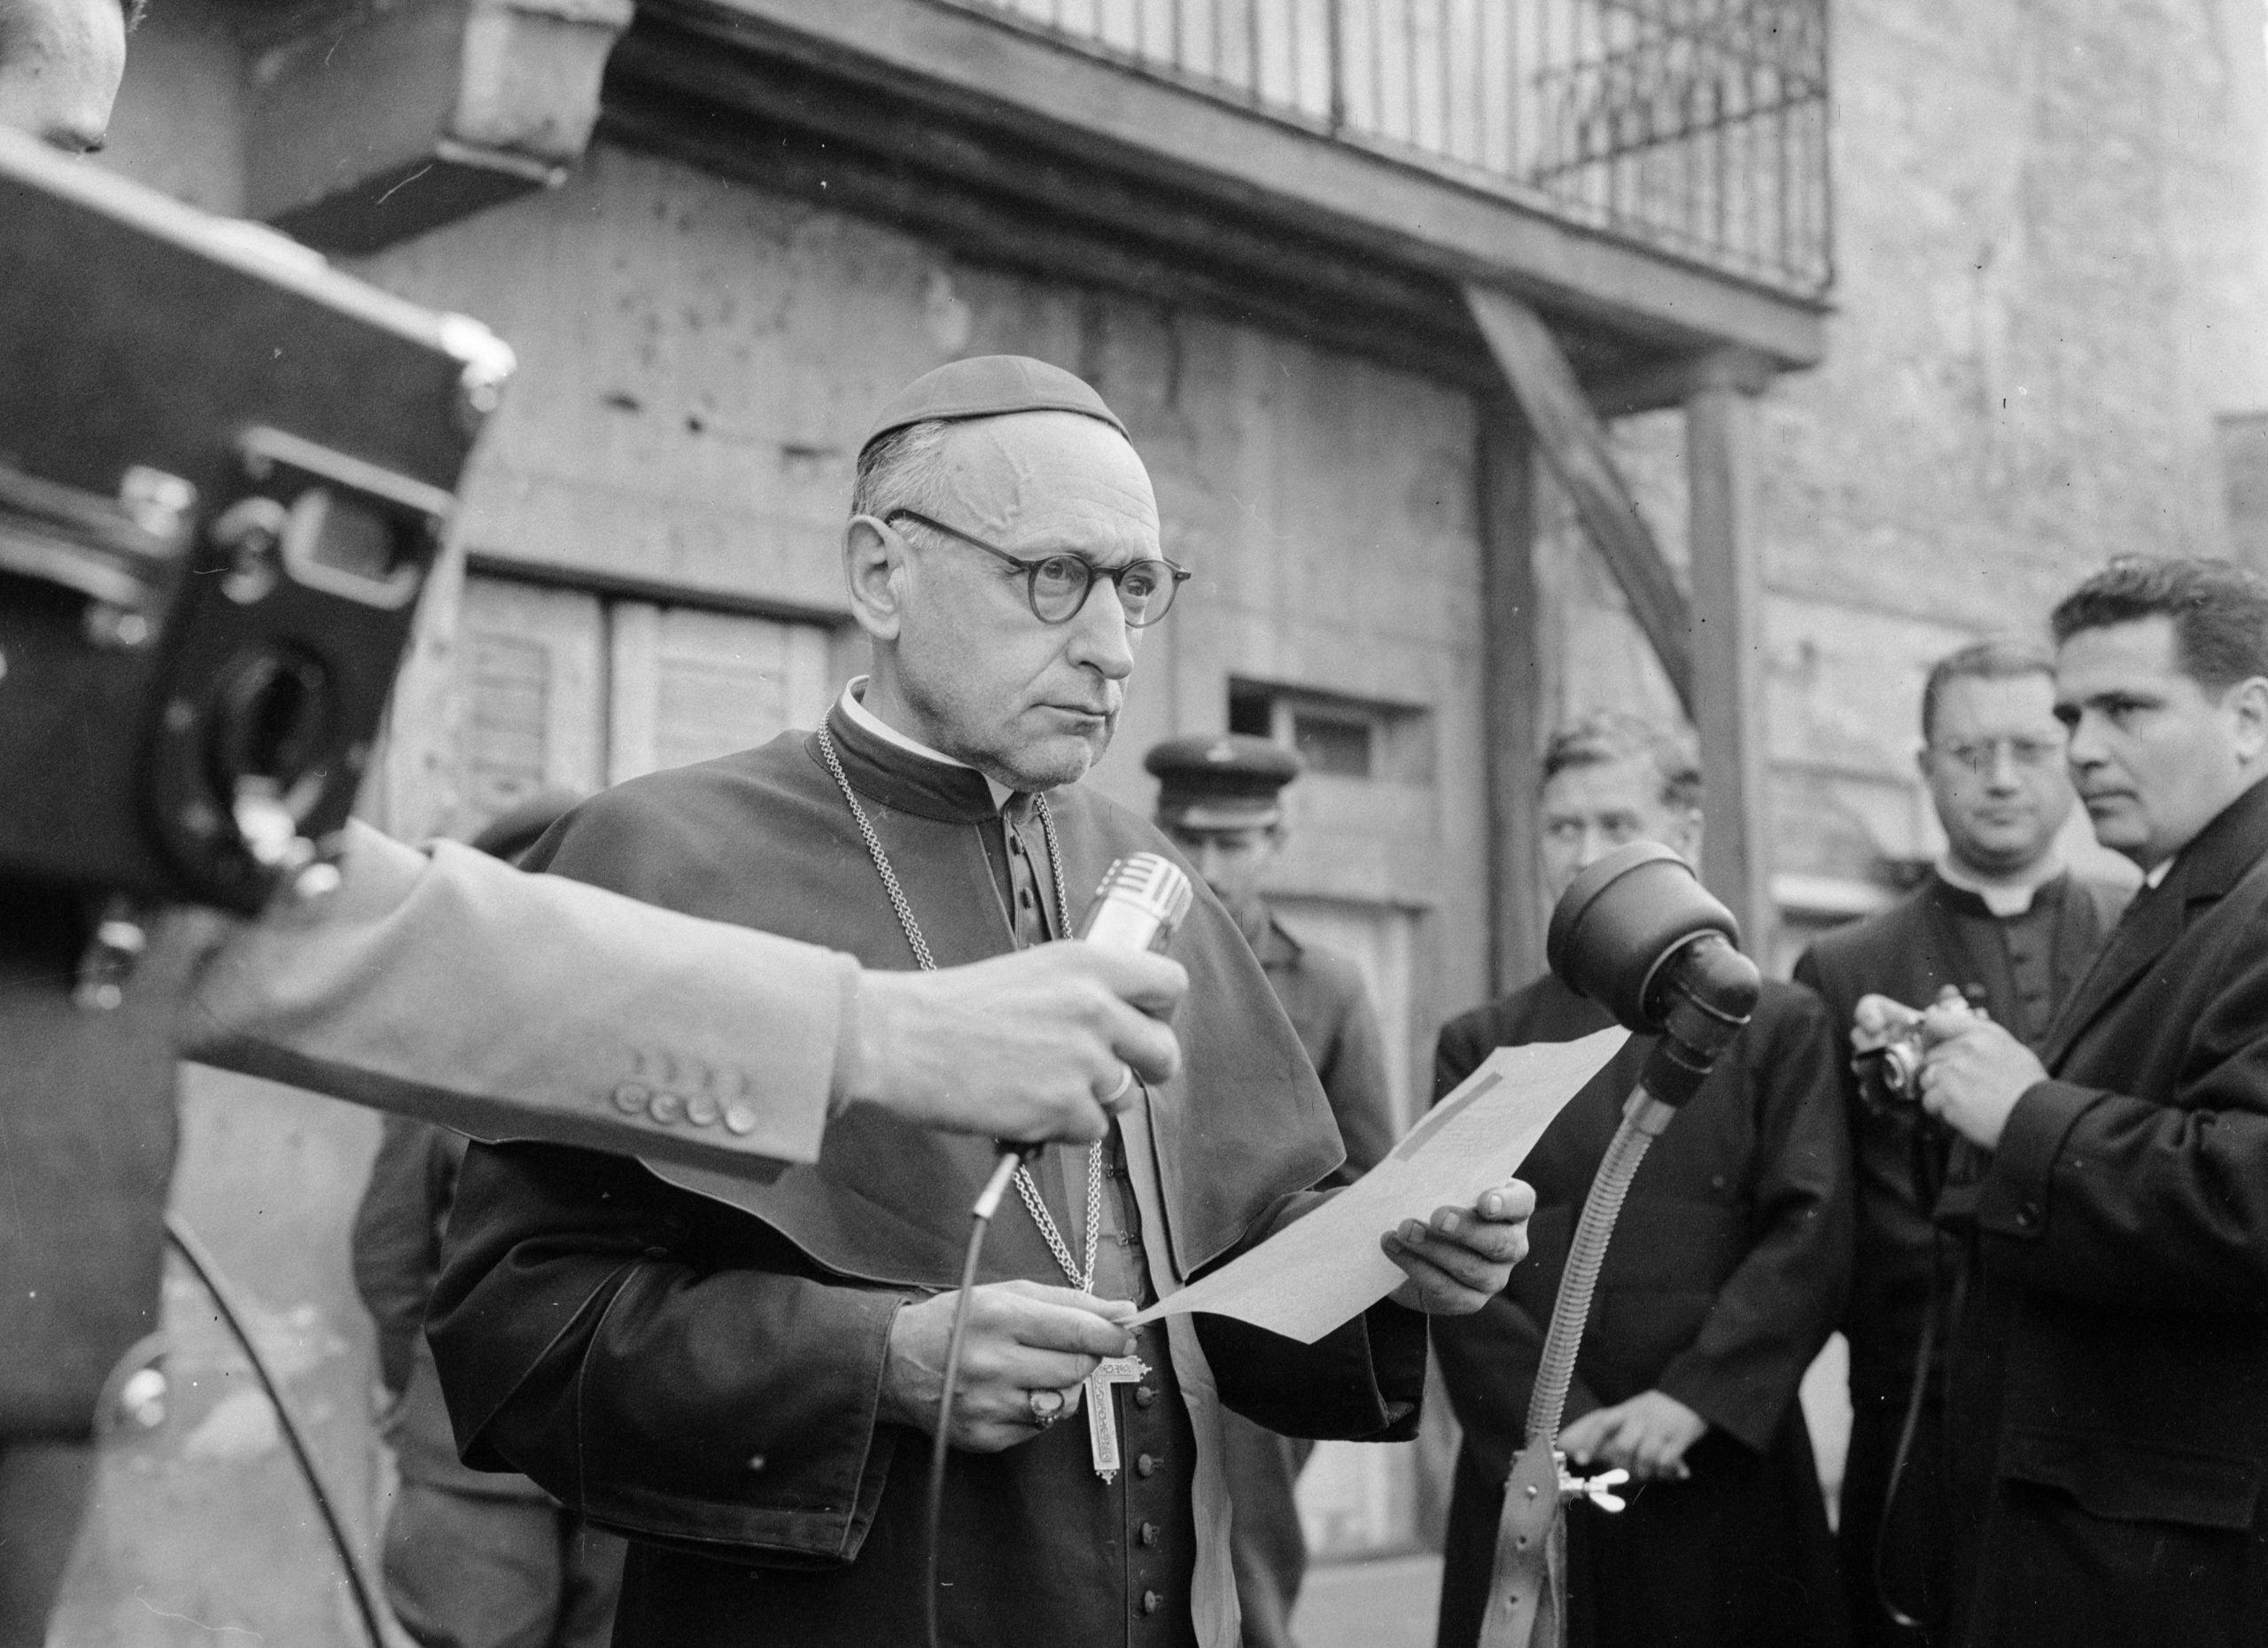 Kardinal Mindszenty, Symbol des Widerstandes gegen den Kommunismus,  am 26. Dezember vor 73 Jahren verhaftet